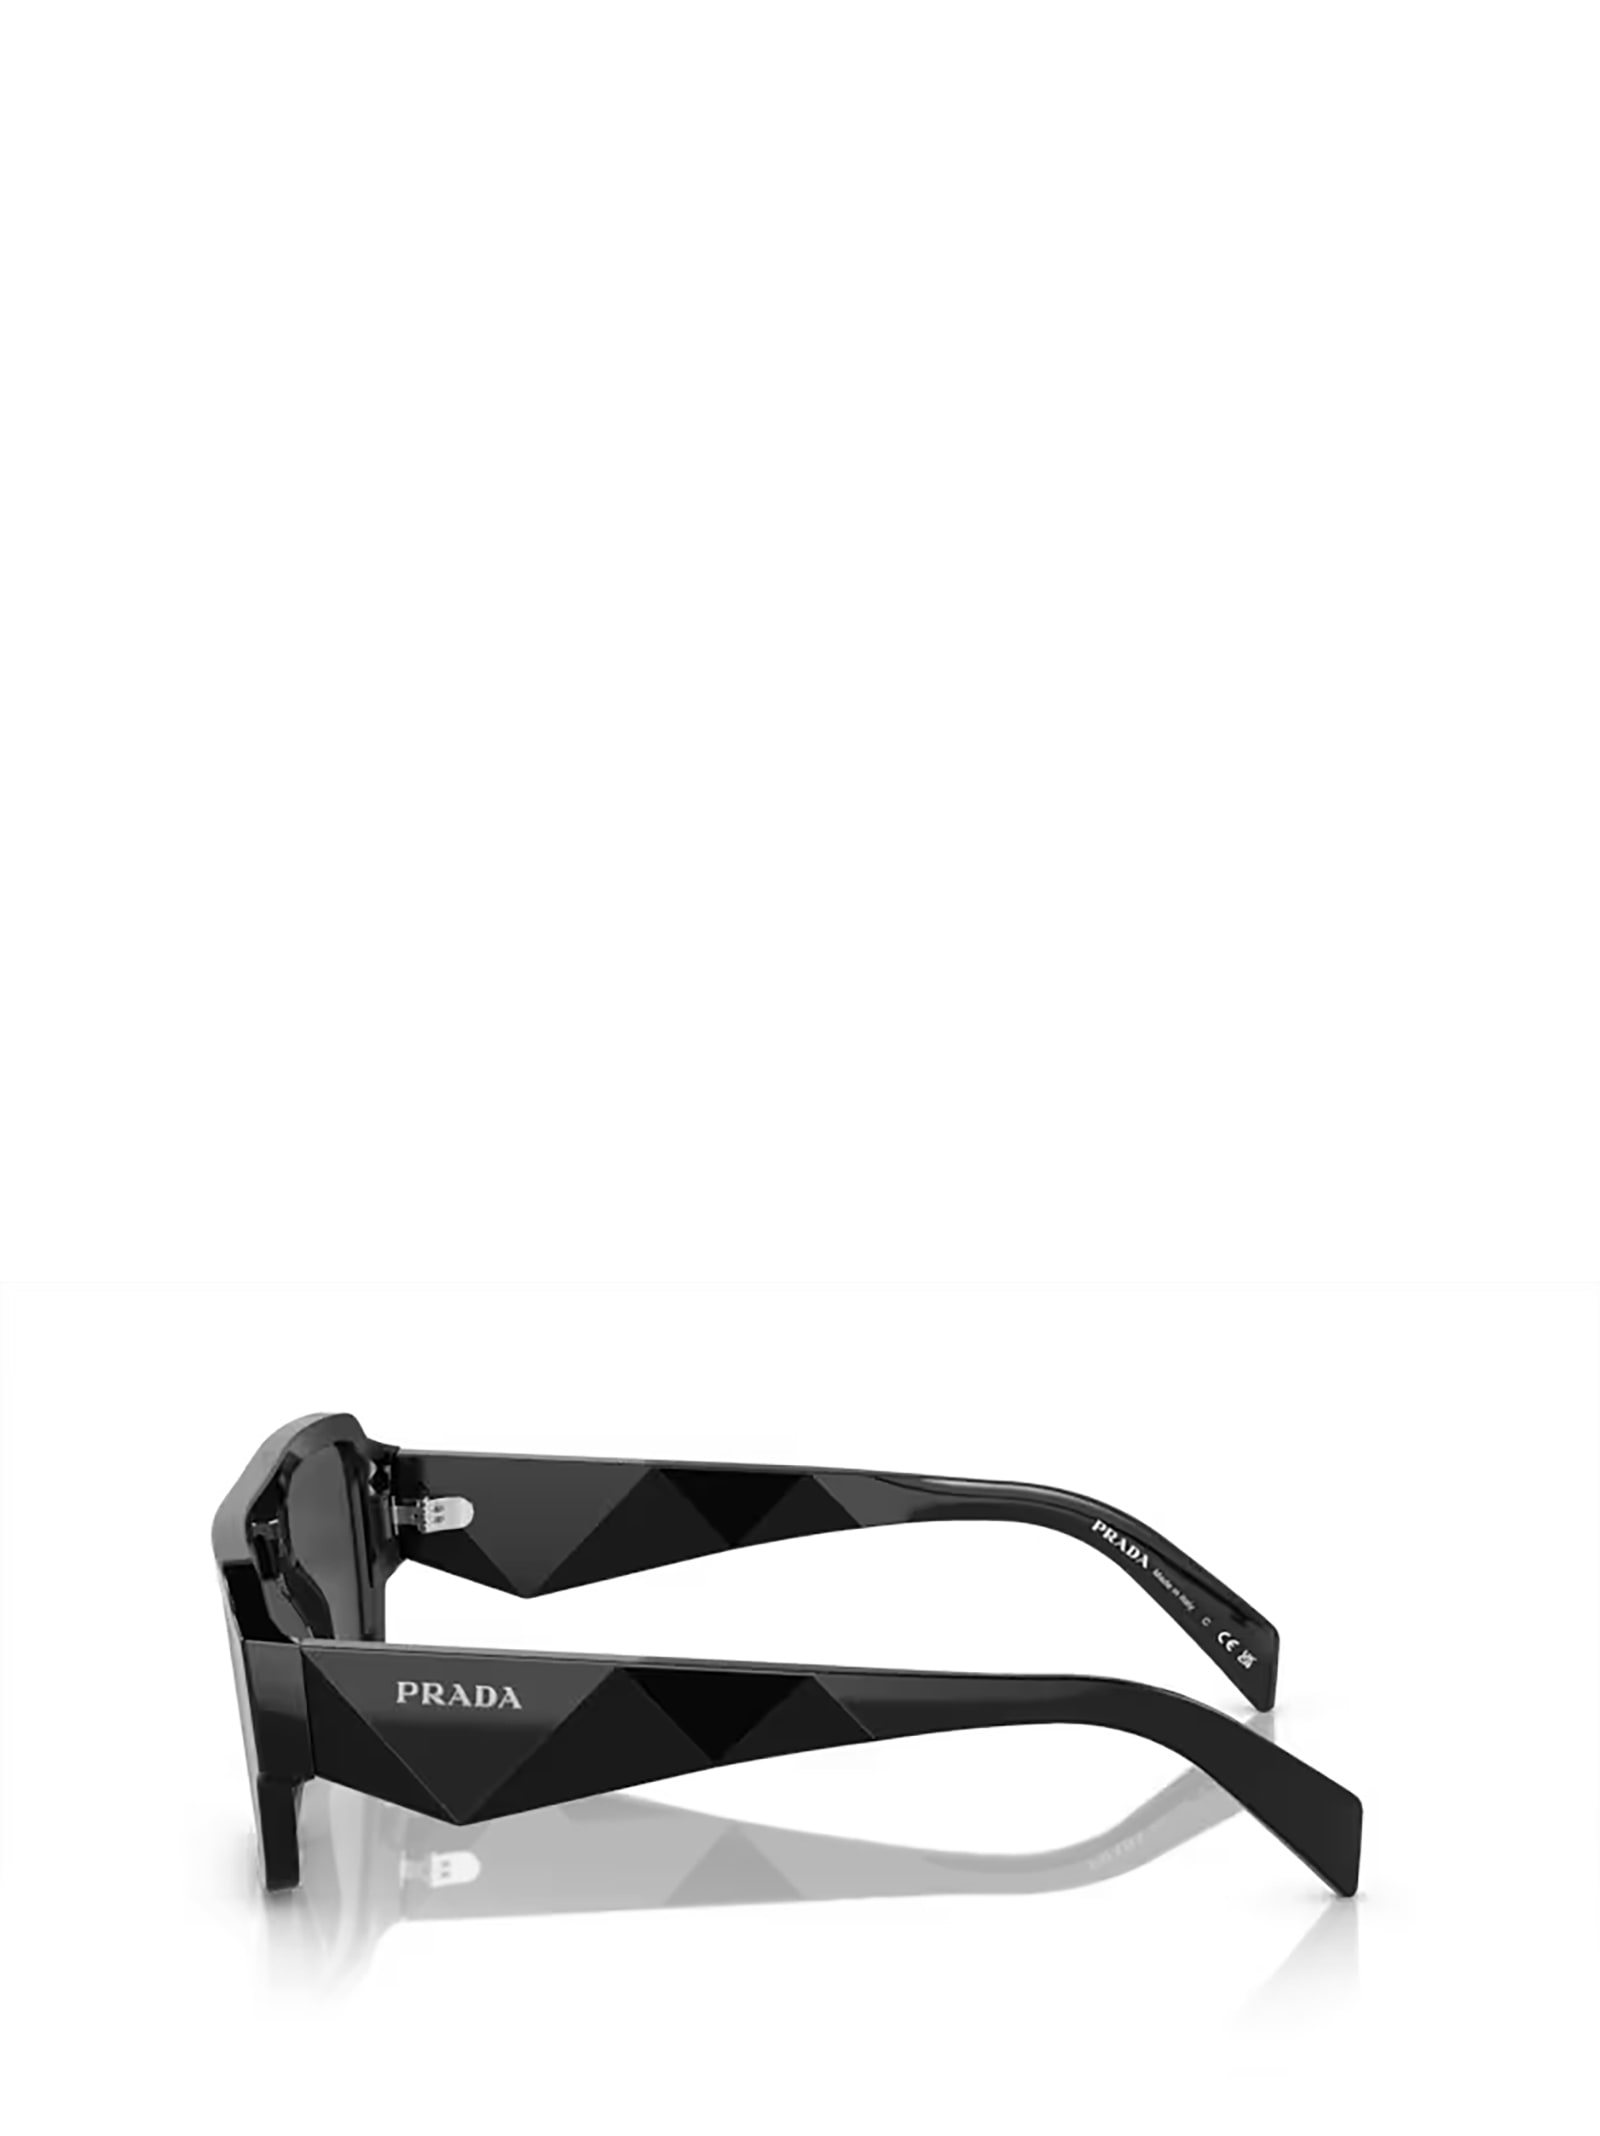 Shop Prada Pr A05s Black Sunglasses